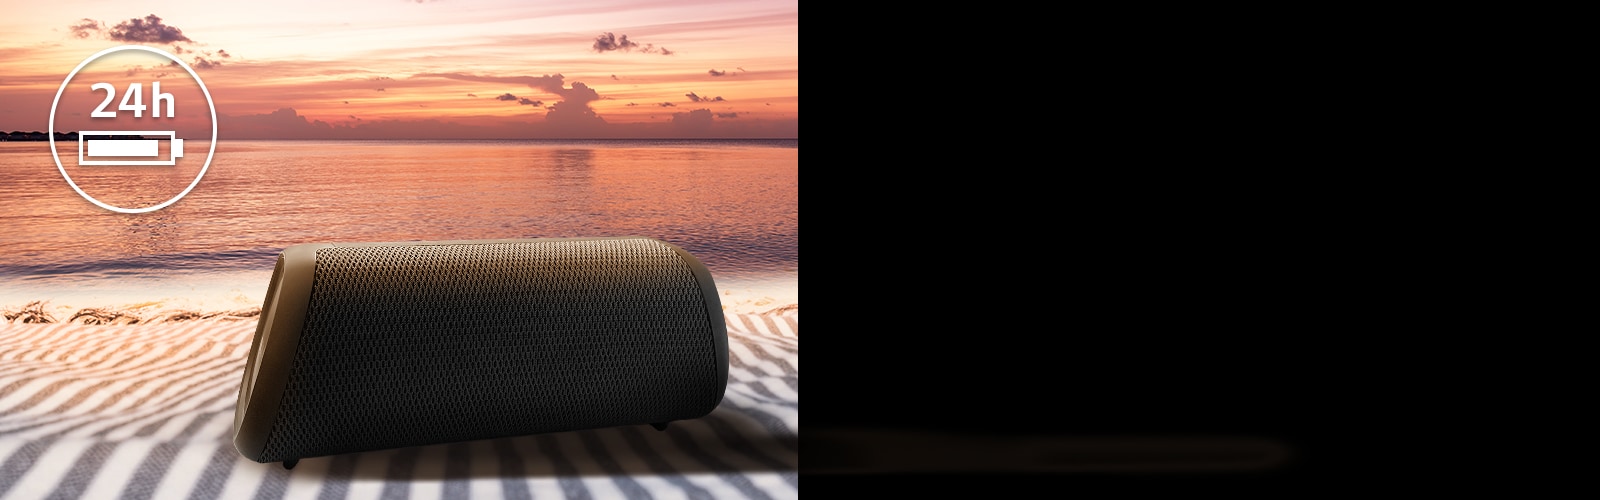 扬声器放置在海滩毛巾上。在扬声器前方，显示了夕阳海滩，表明扬声器的连续播放时间长达 24 小时。